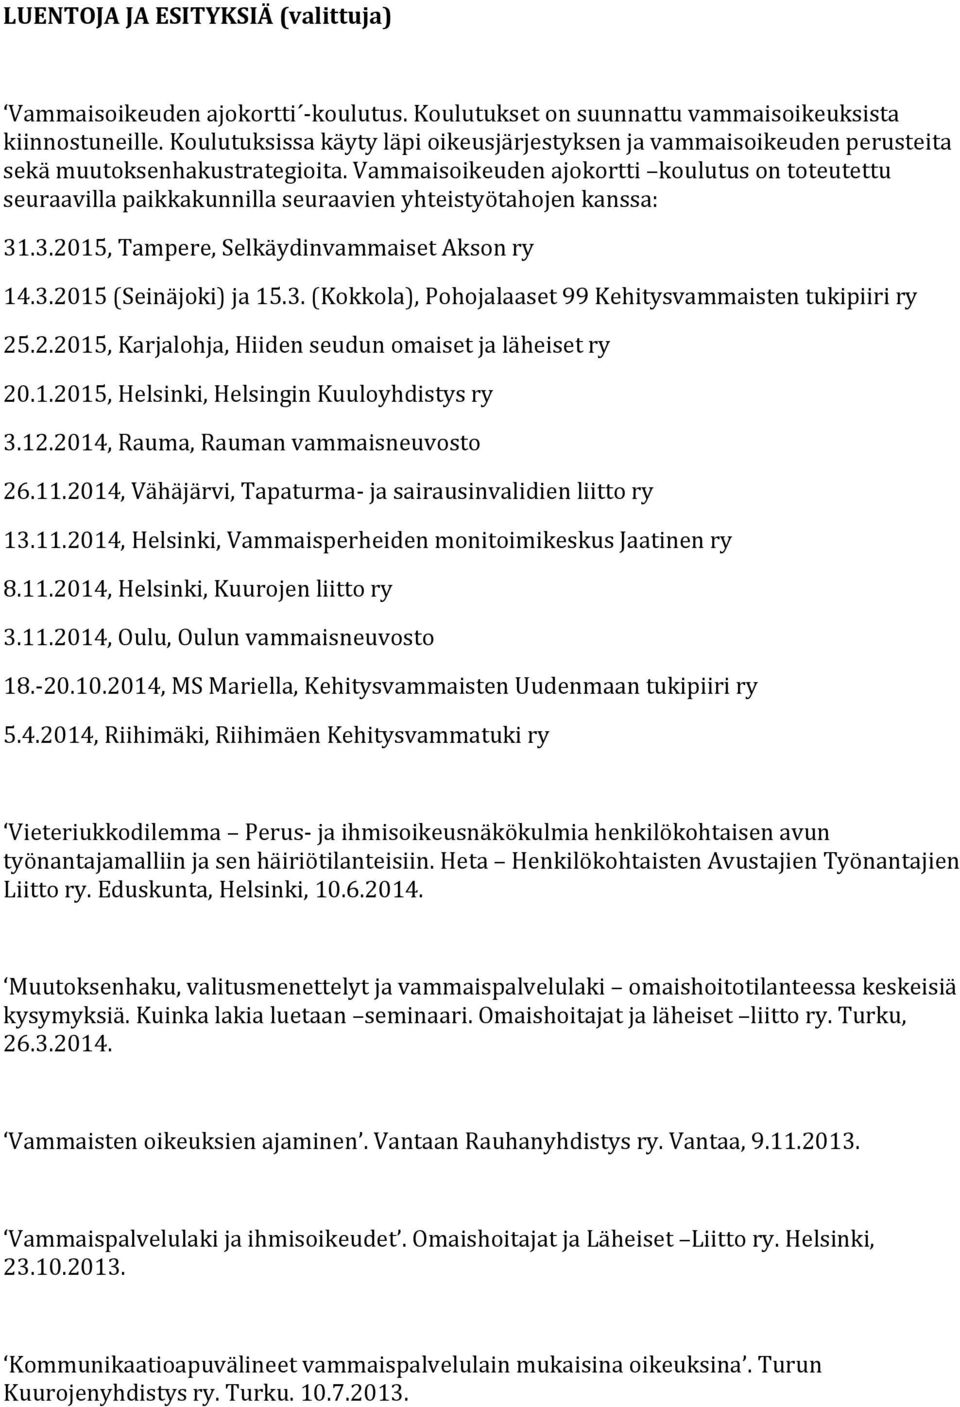 Vammaisoikeuden ajokortti koulutus on toteutettu seuraavilla paikkakunnilla seuraavien yhteistyötahojen kanssa: 31.3.2015, Tampere, Selkäydinvammaiset Akson ry 14.3.2015 (Seinäjoki) ja 15.3. (Kokkola), Pohojalaaset 99 Kehitysvammaisten tukipiiri ry 25.